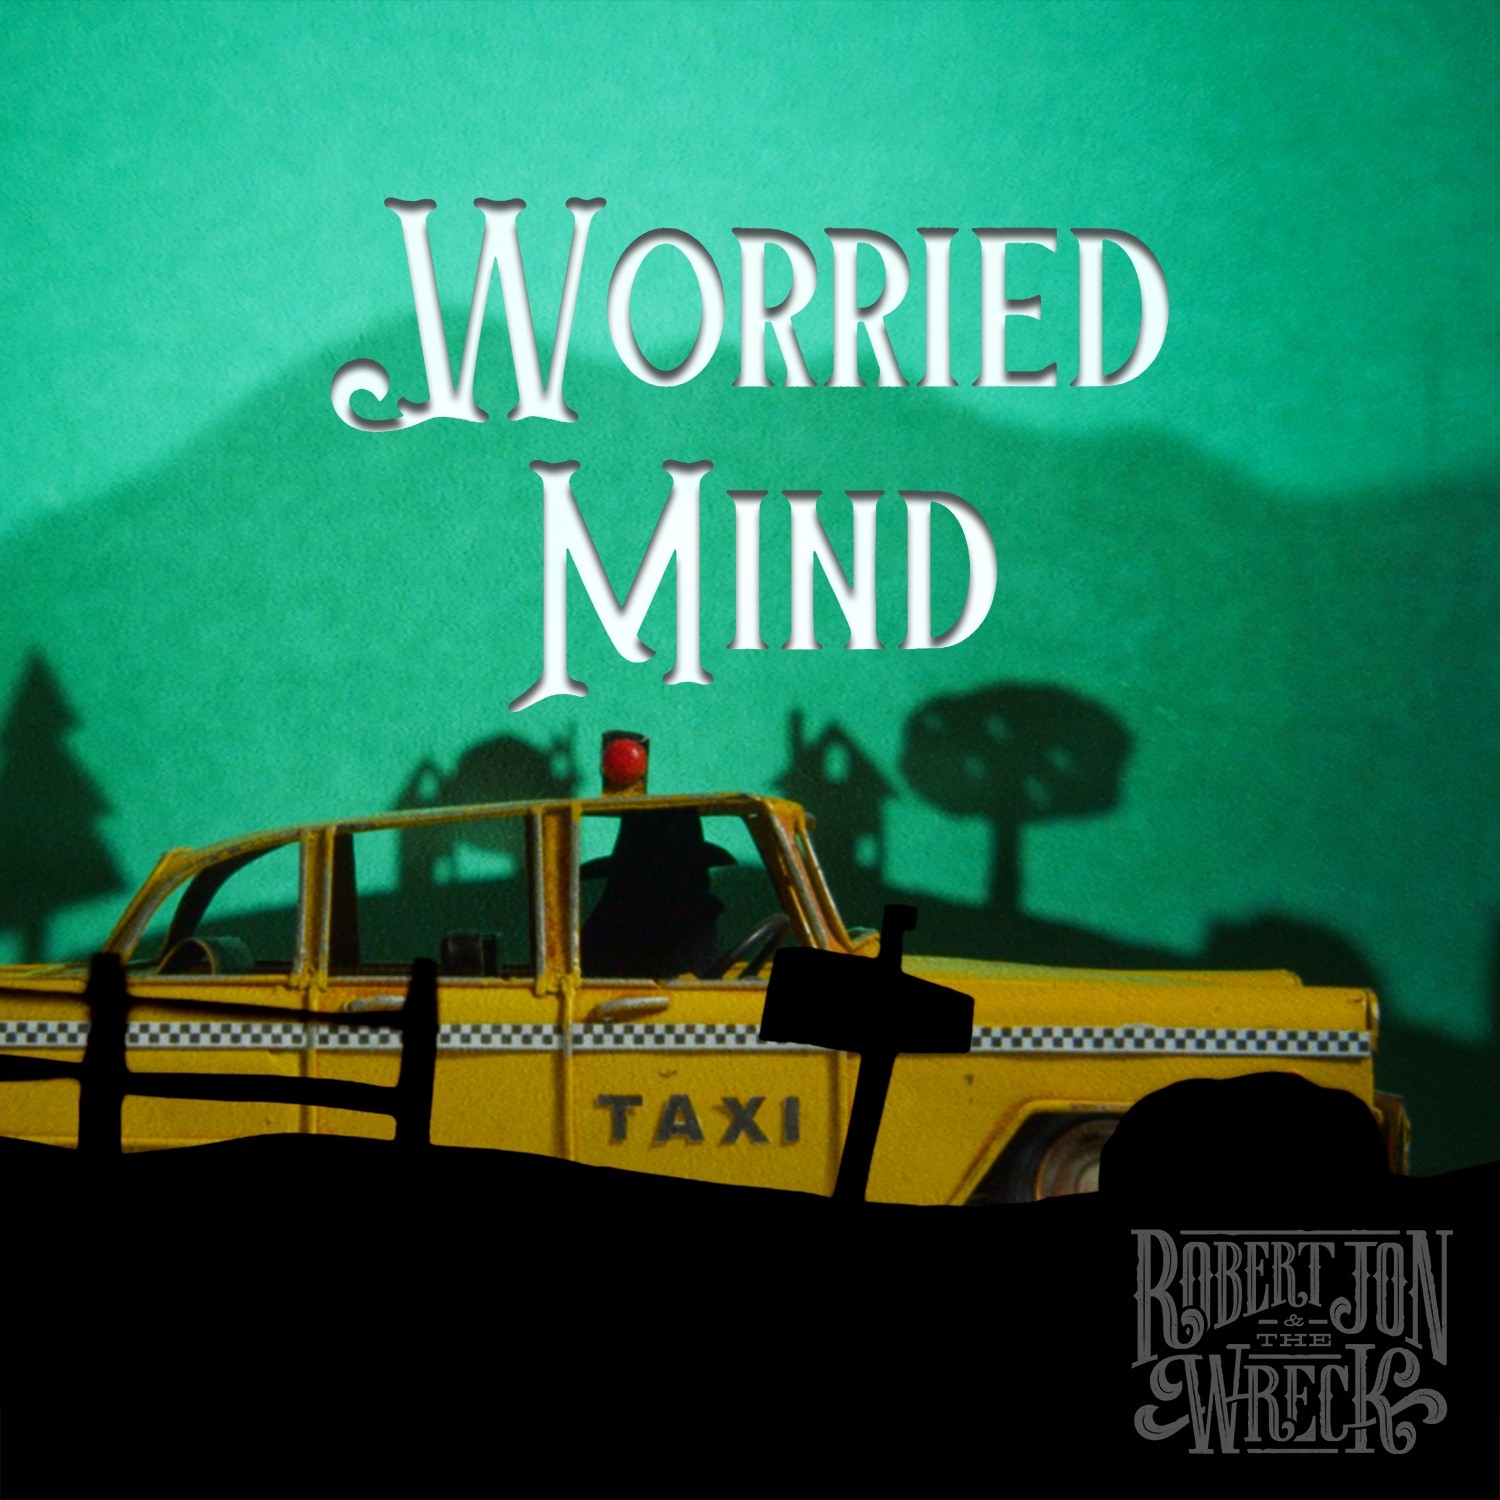 Robert Jon & The Wreck - Worried Mind